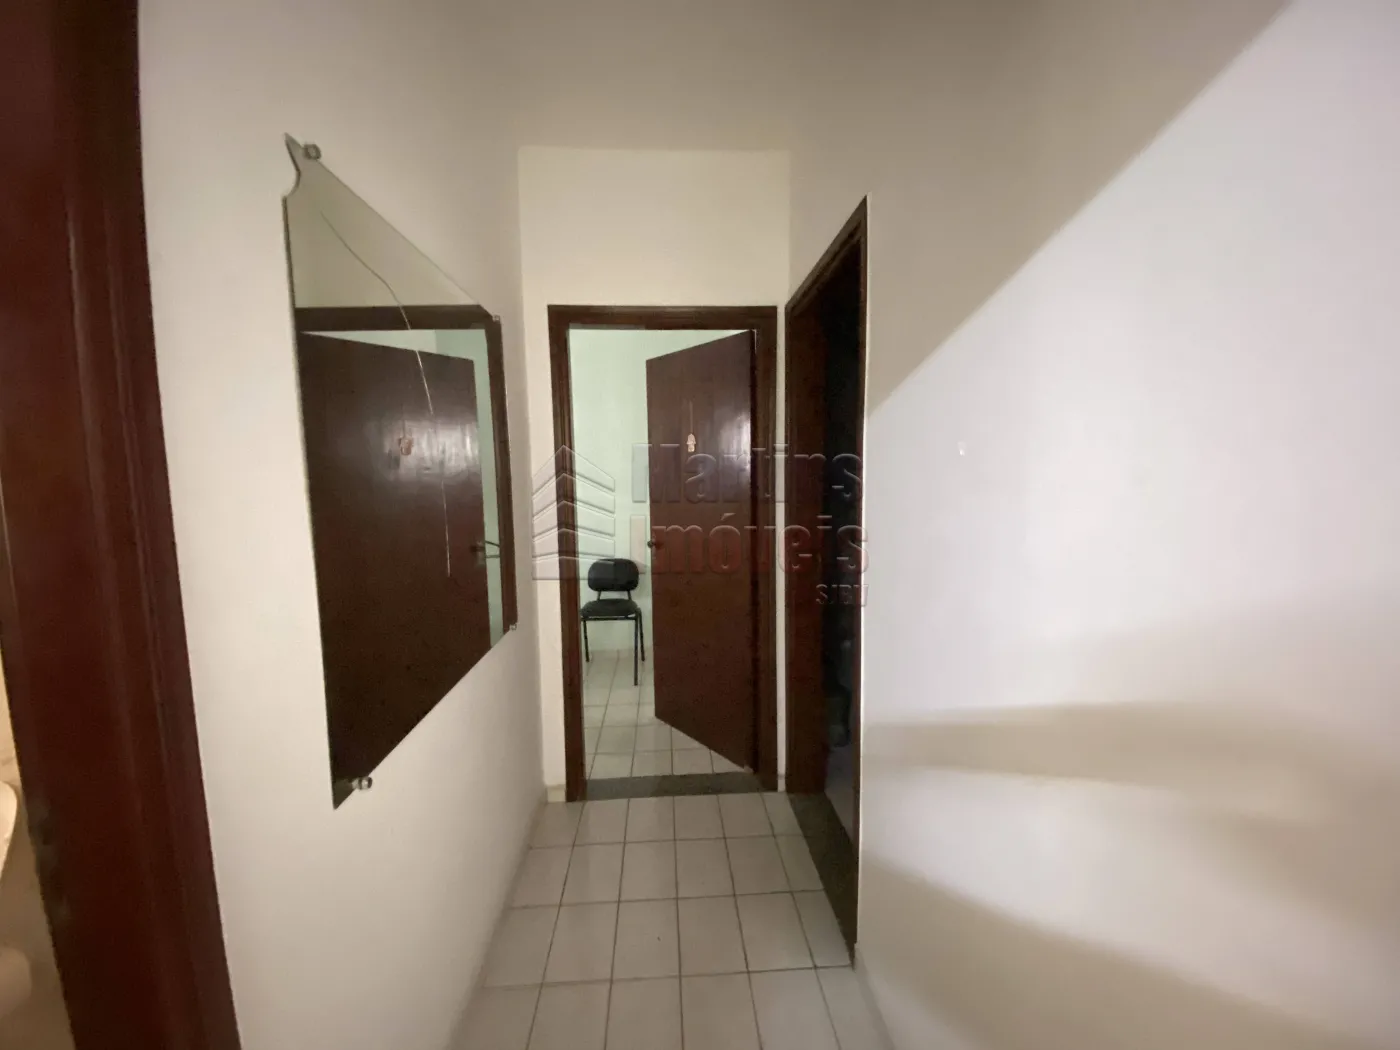 Comprar Casa / Padrão em São João da Boa Vista R$ 320.000,00 - Foto 5